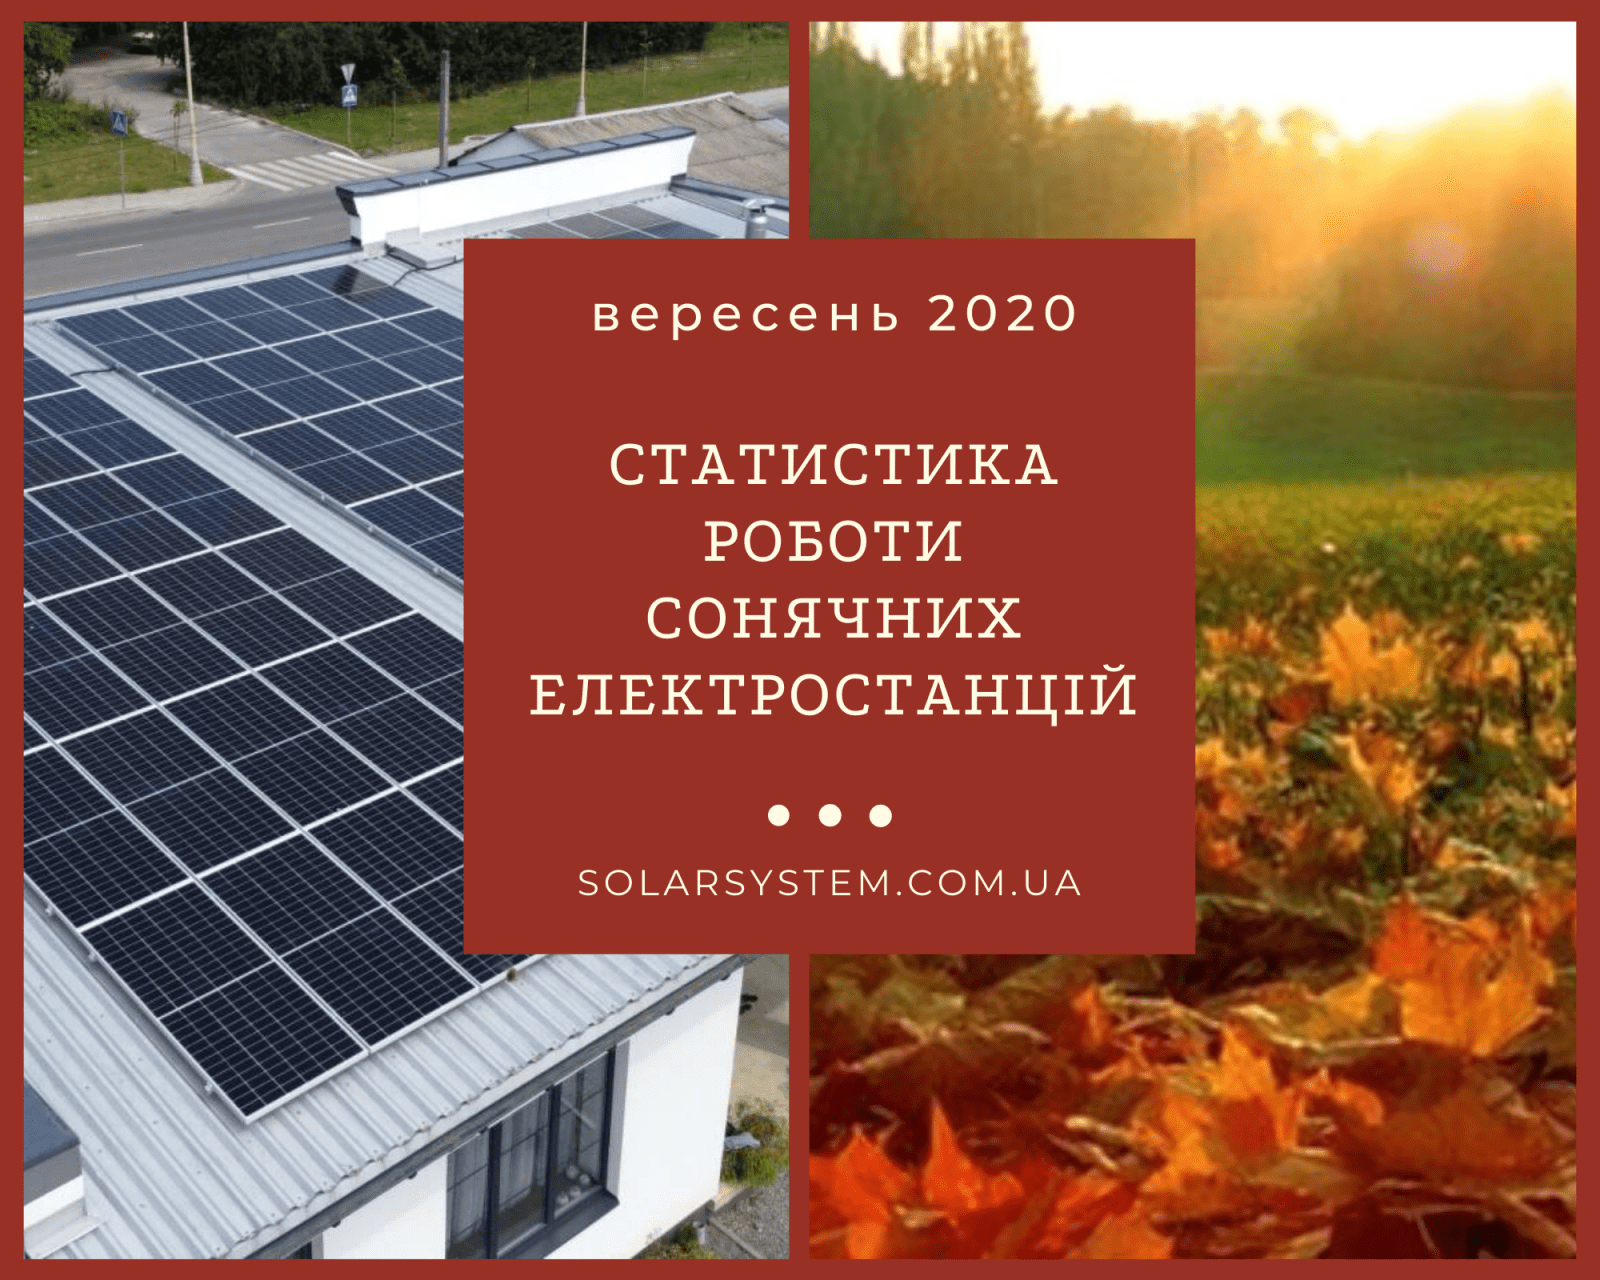 Звіт про роботу сонячних електростанцій під Зелений тариф за вересень 2020 року